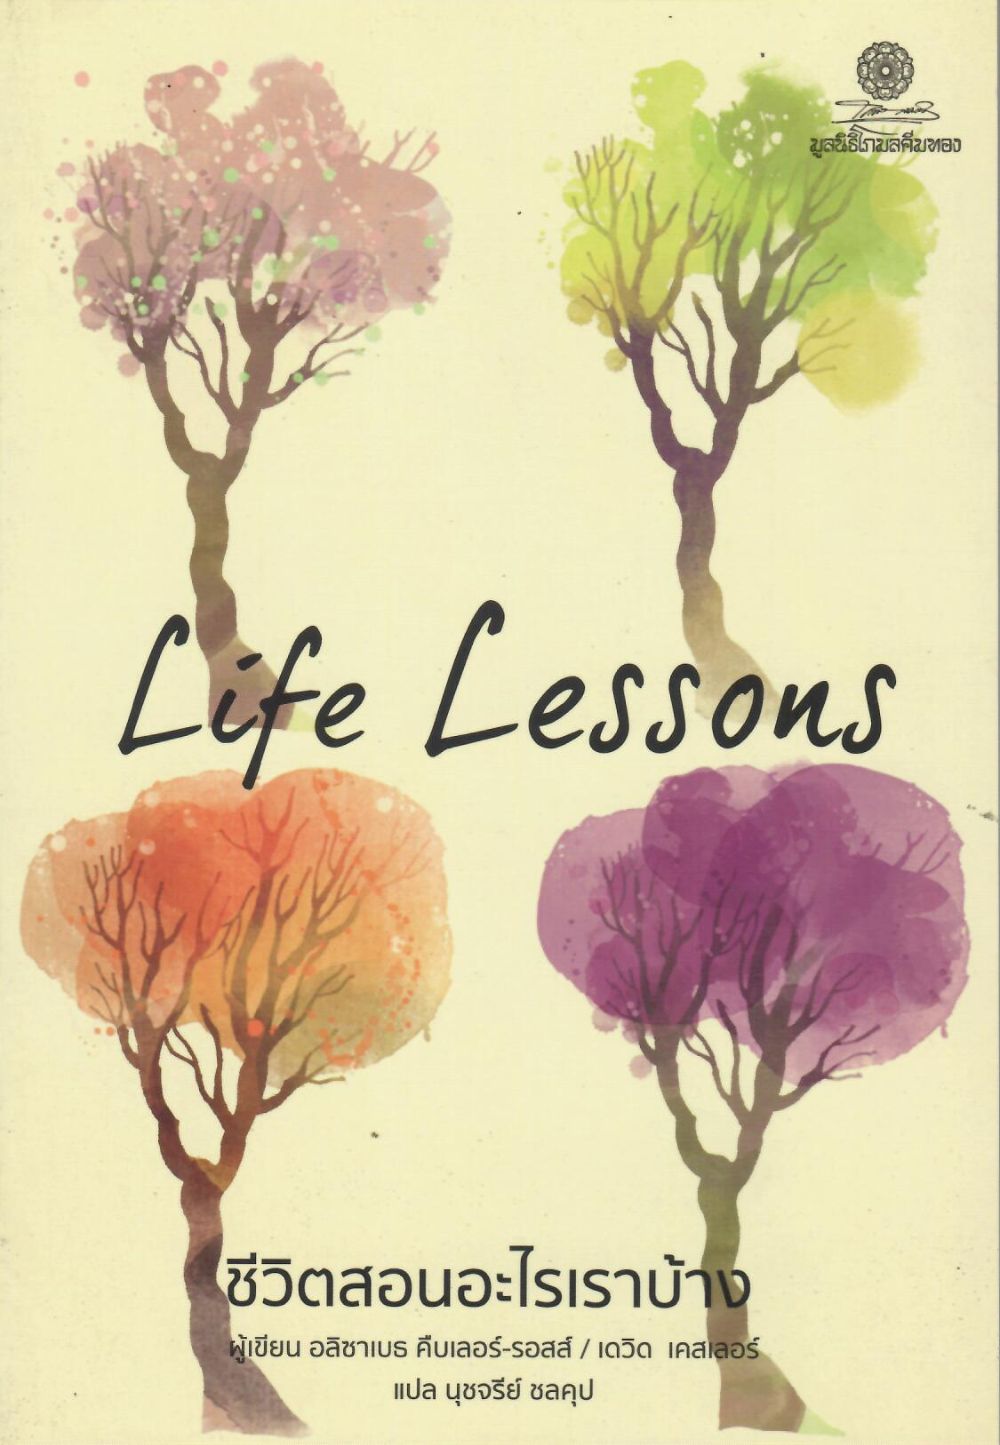 ชีวิตสอนอะไรเราบ้าง= Life lessons/ อลิซาเบธ คืบเลอร์-รอสส์ และเดวิด เคสเลอร์, ผู้เขียน ; นุชจรีย์ ชลคุป, ผู้แปล